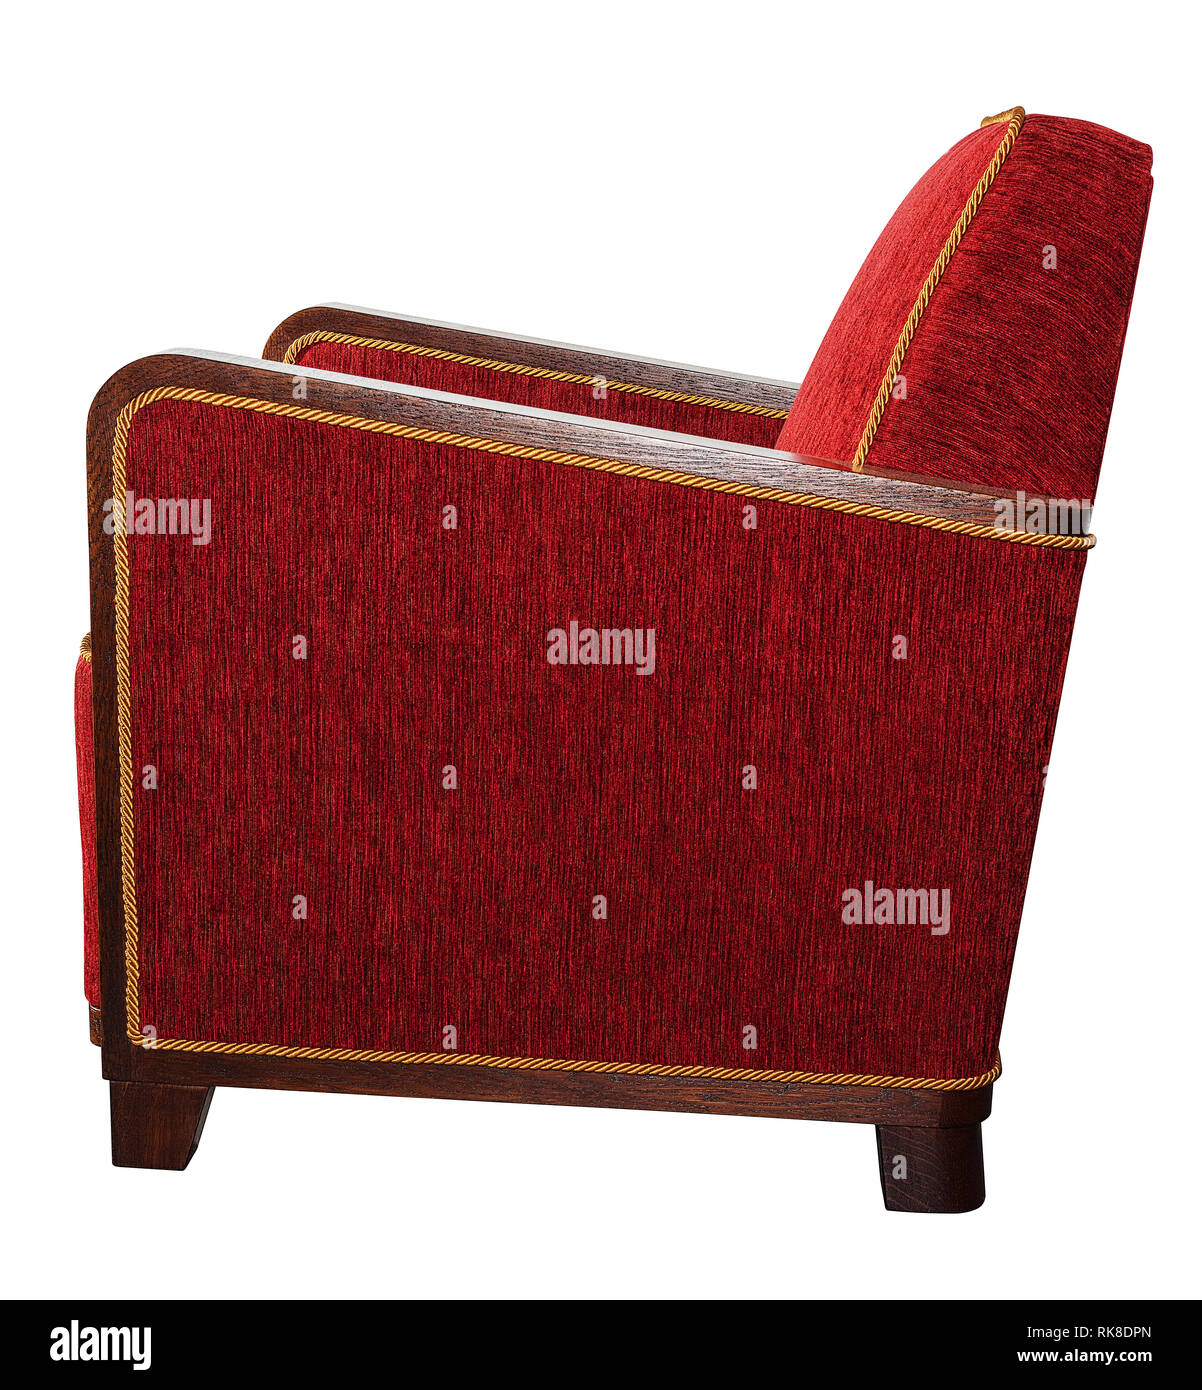 Style Art déco meubles fauteuil rouge avec accoudoirs en bois angulaire typique isolated on white Banque D'Images